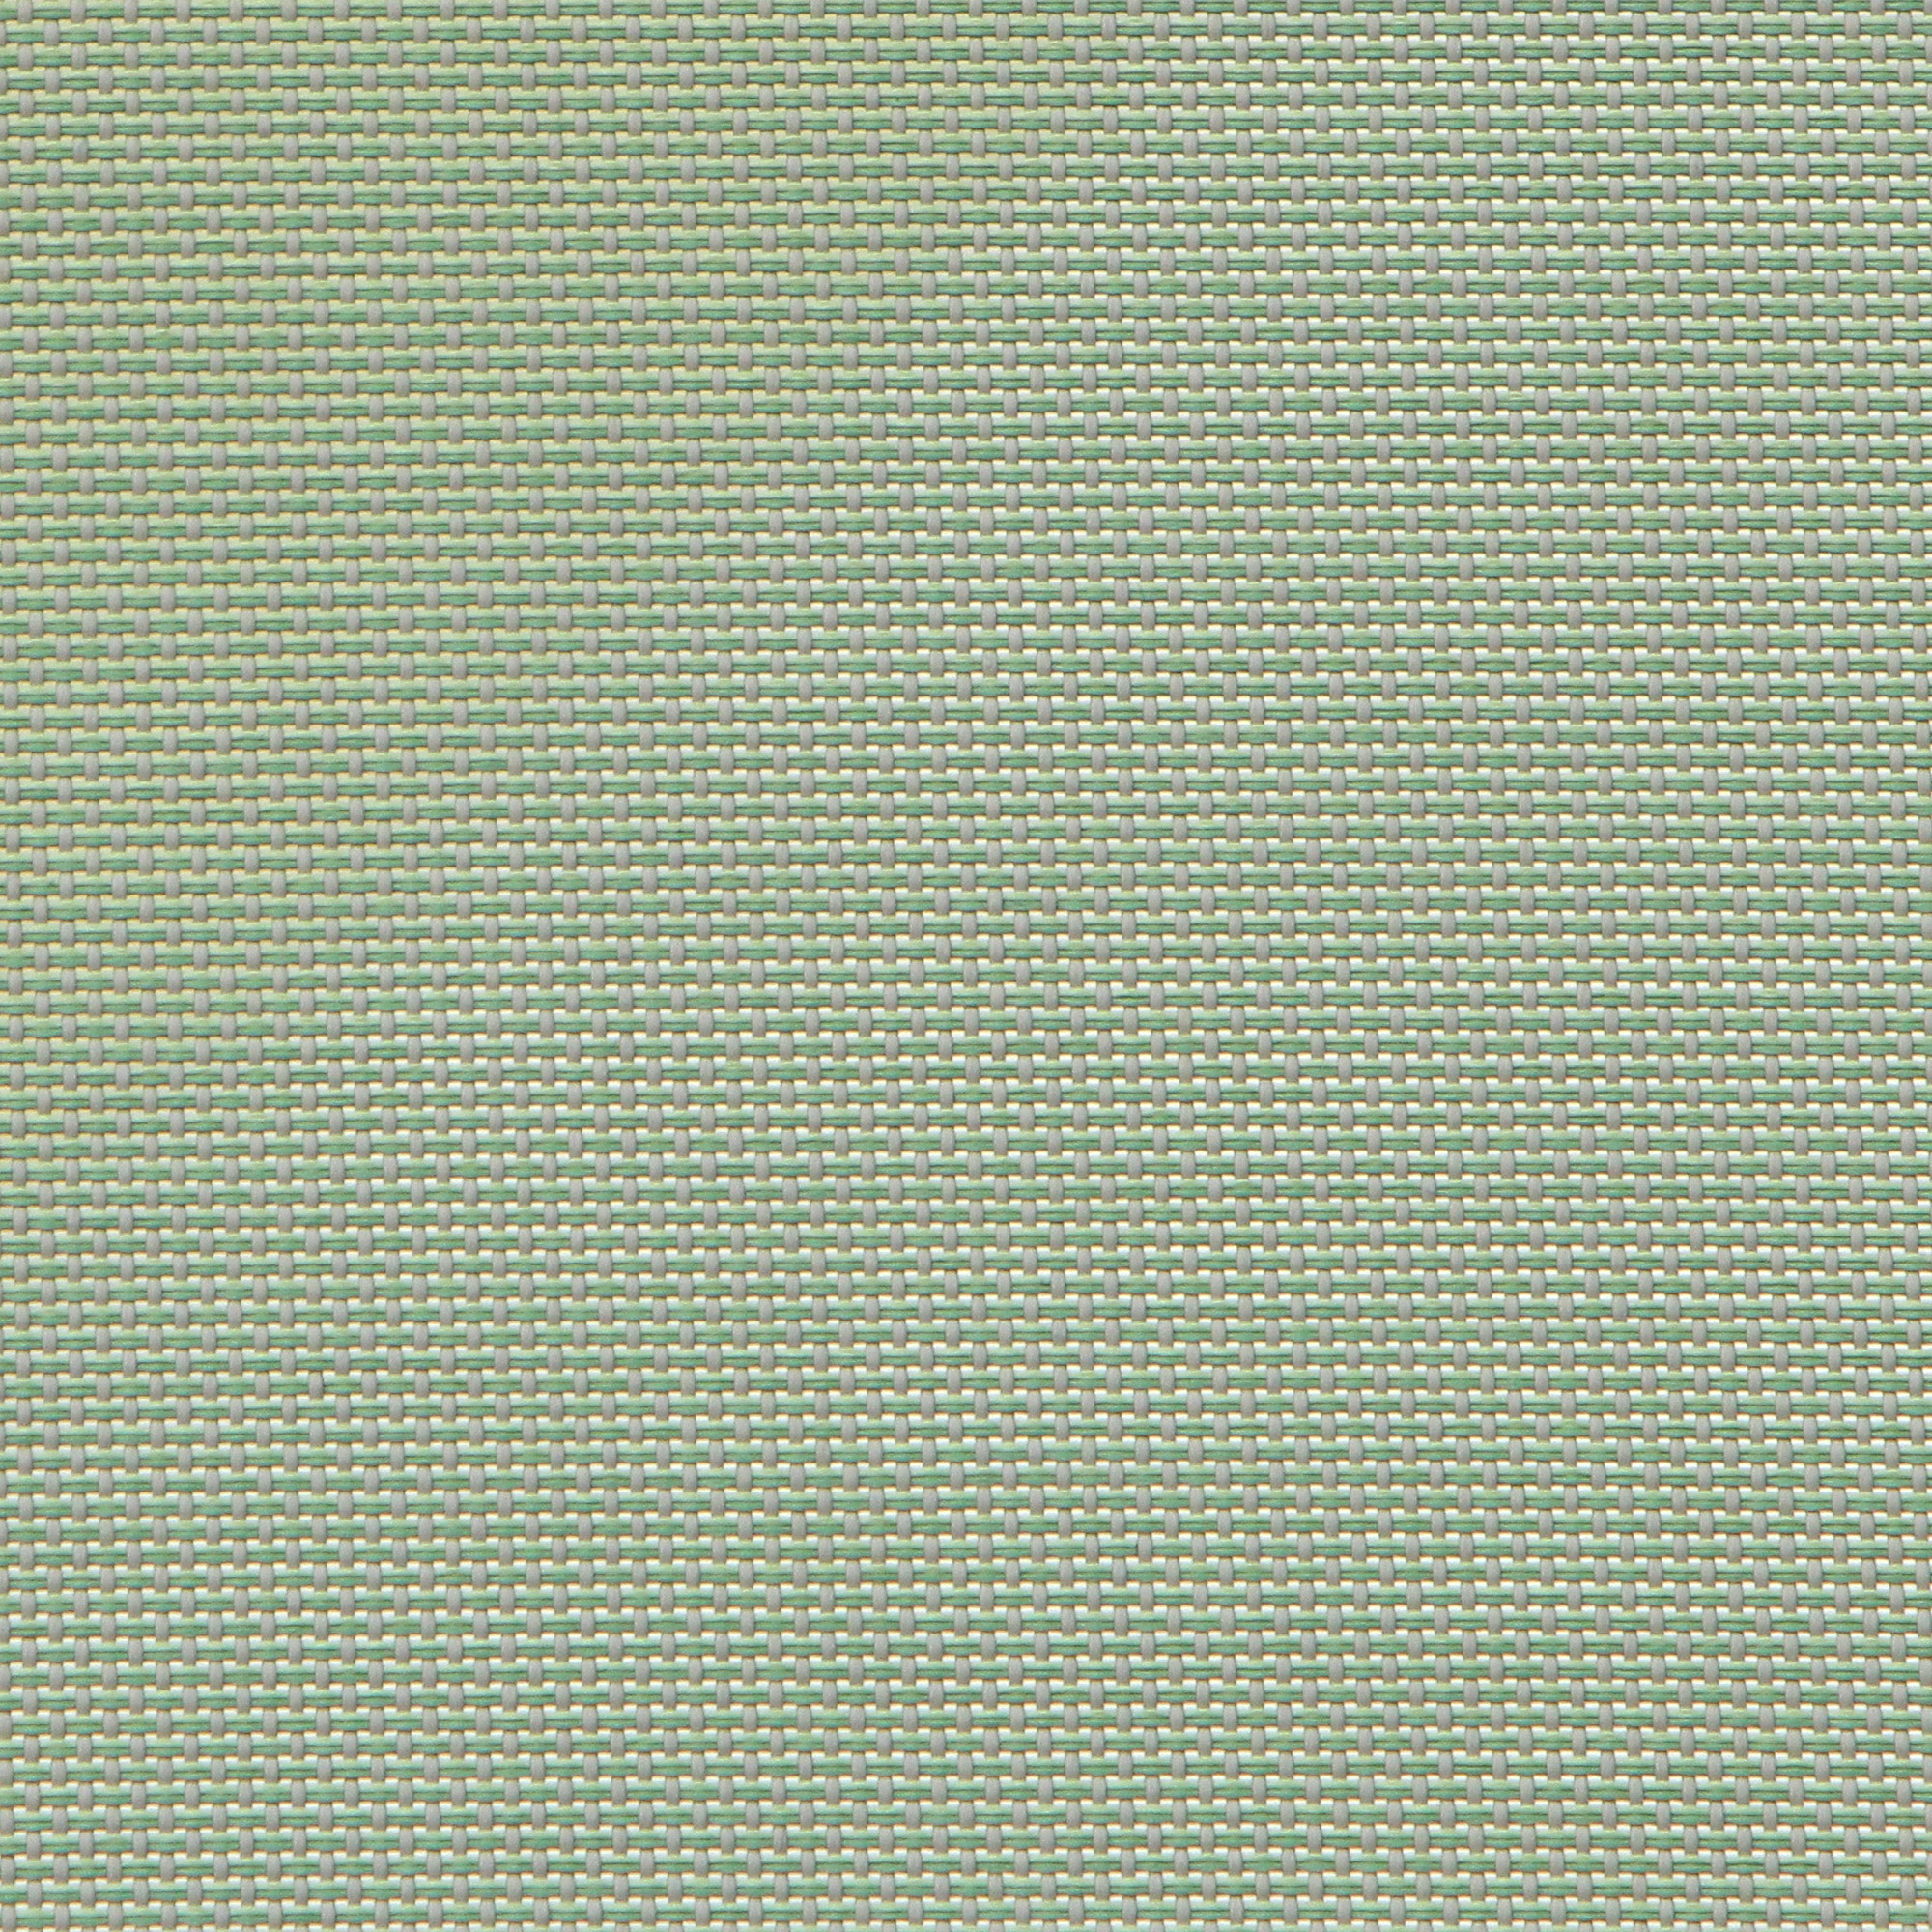 Шезлонг Nardi agave атлантико кофейный декор, цвет зеленый/агава - фото 6